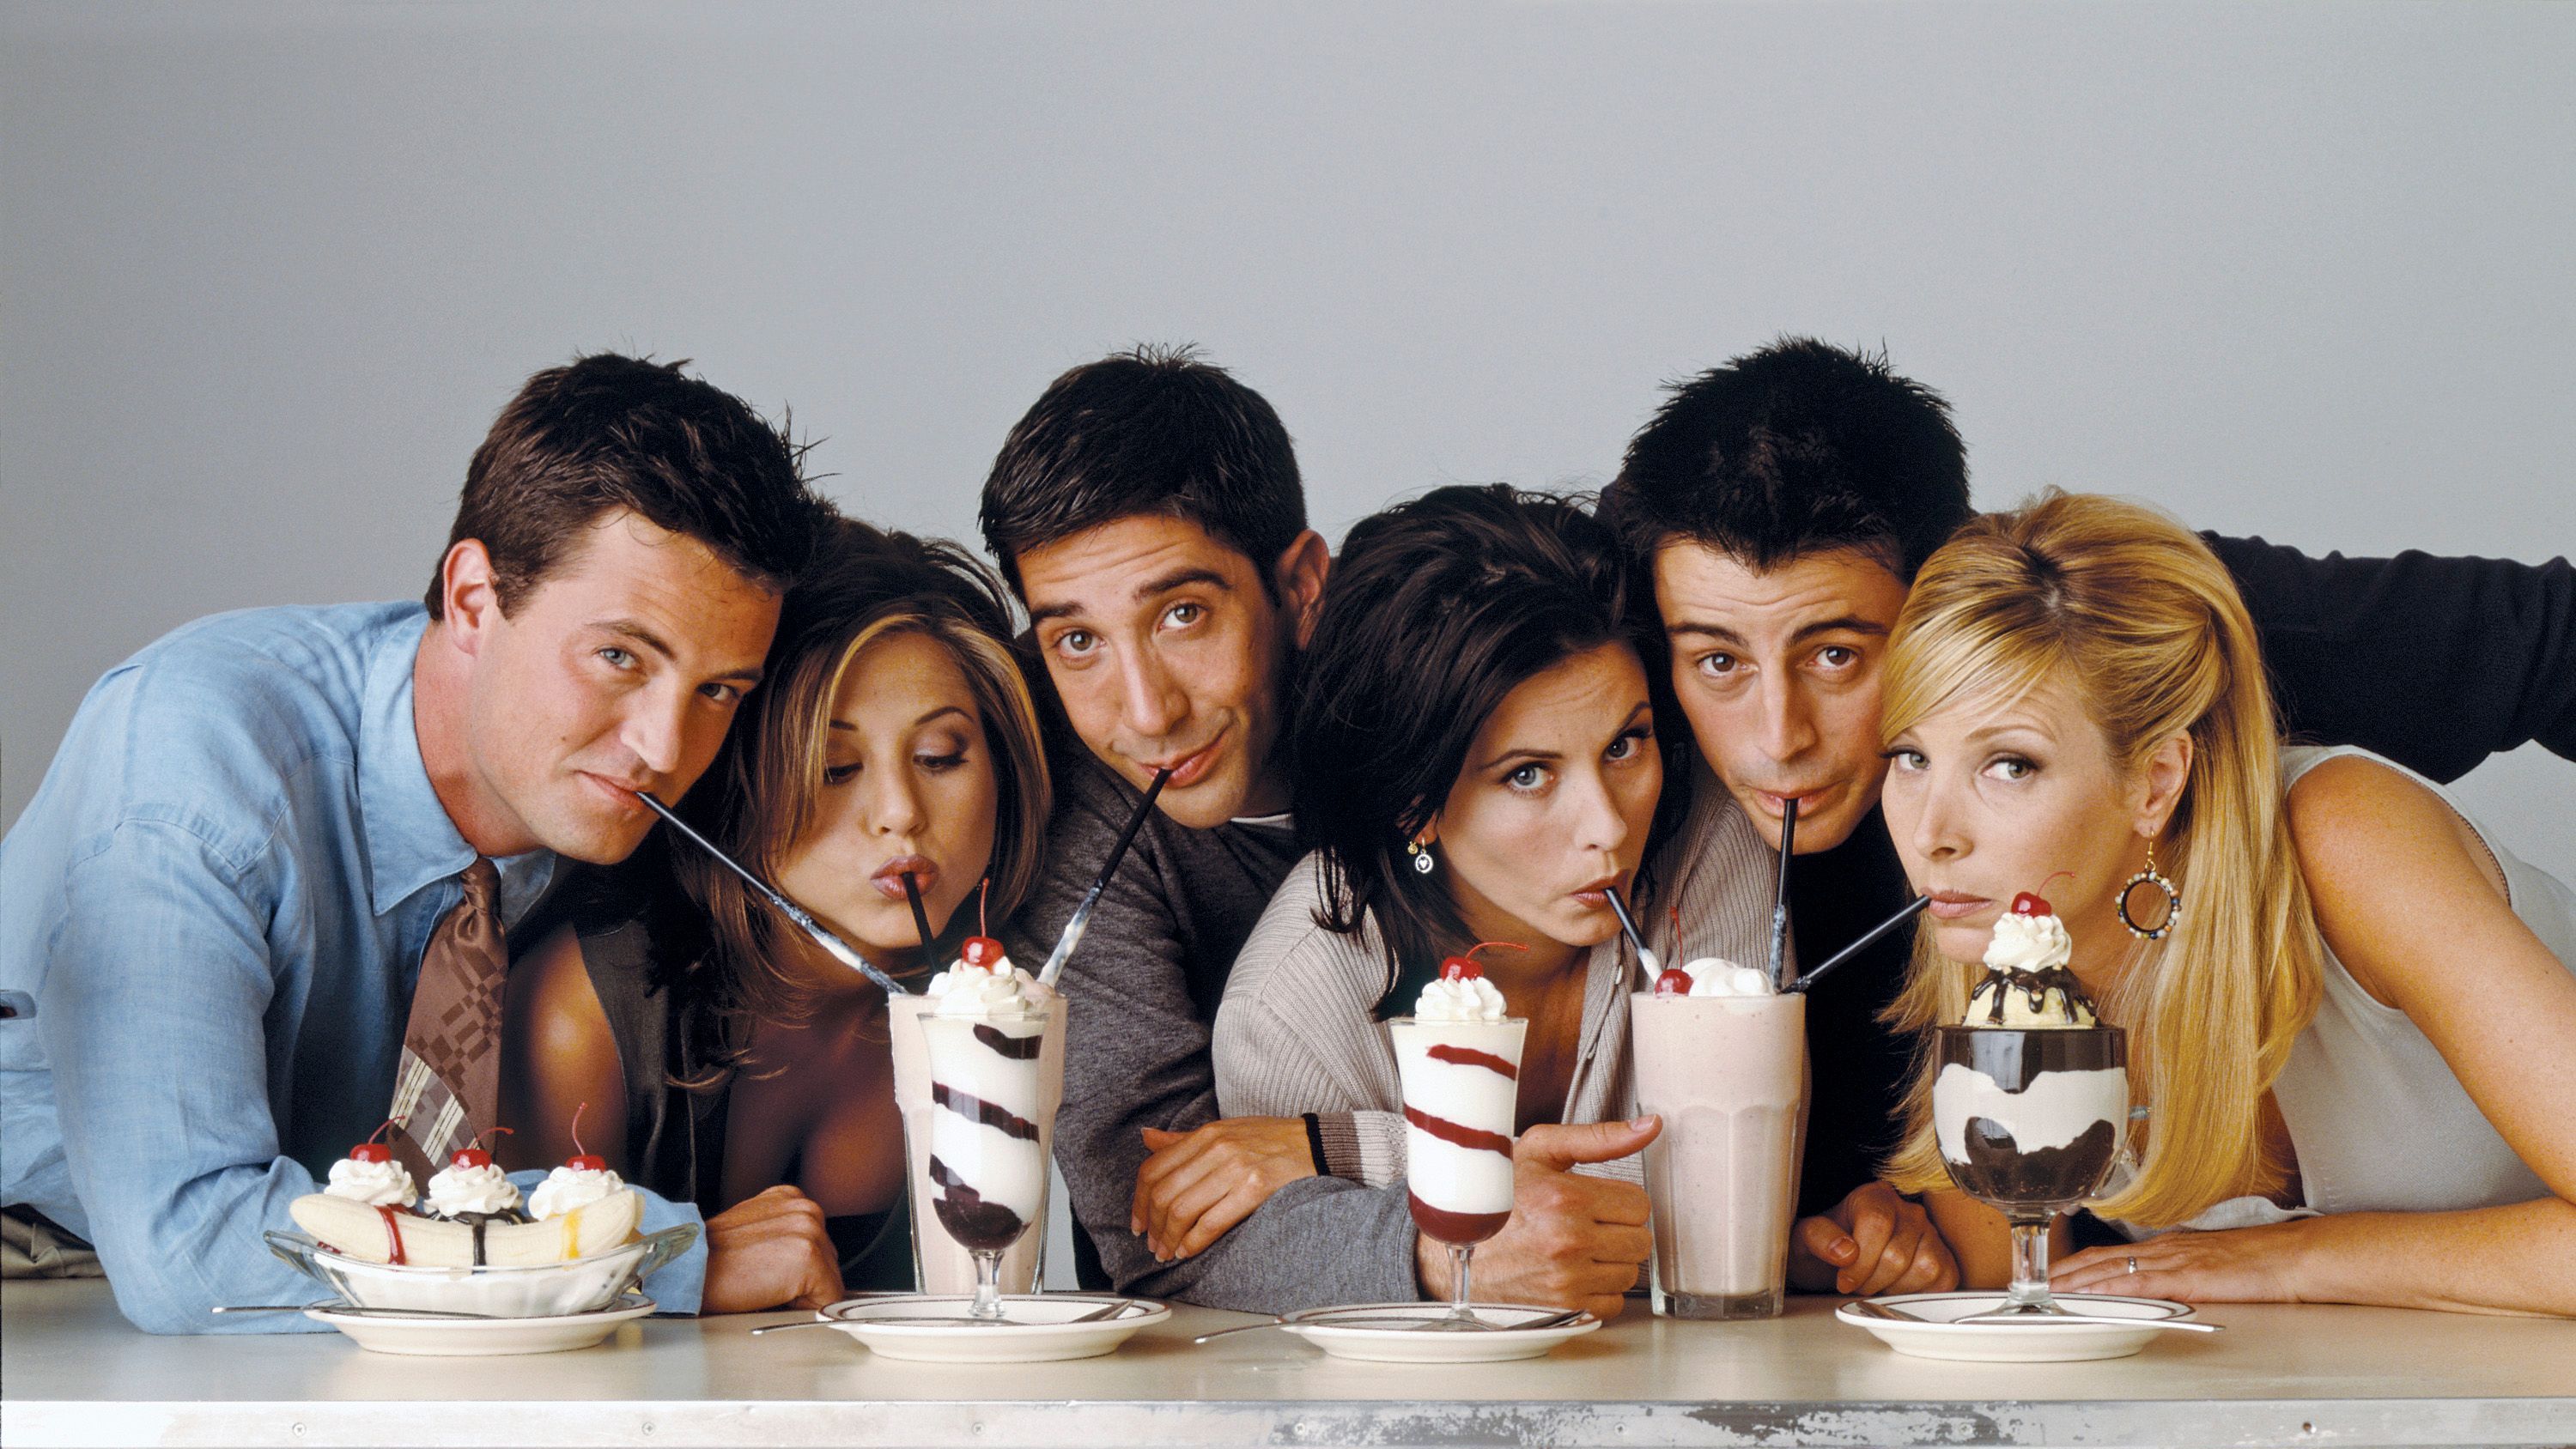 Venner - De seks venner sidder med hver deres sugerør og deler to milkshakes.